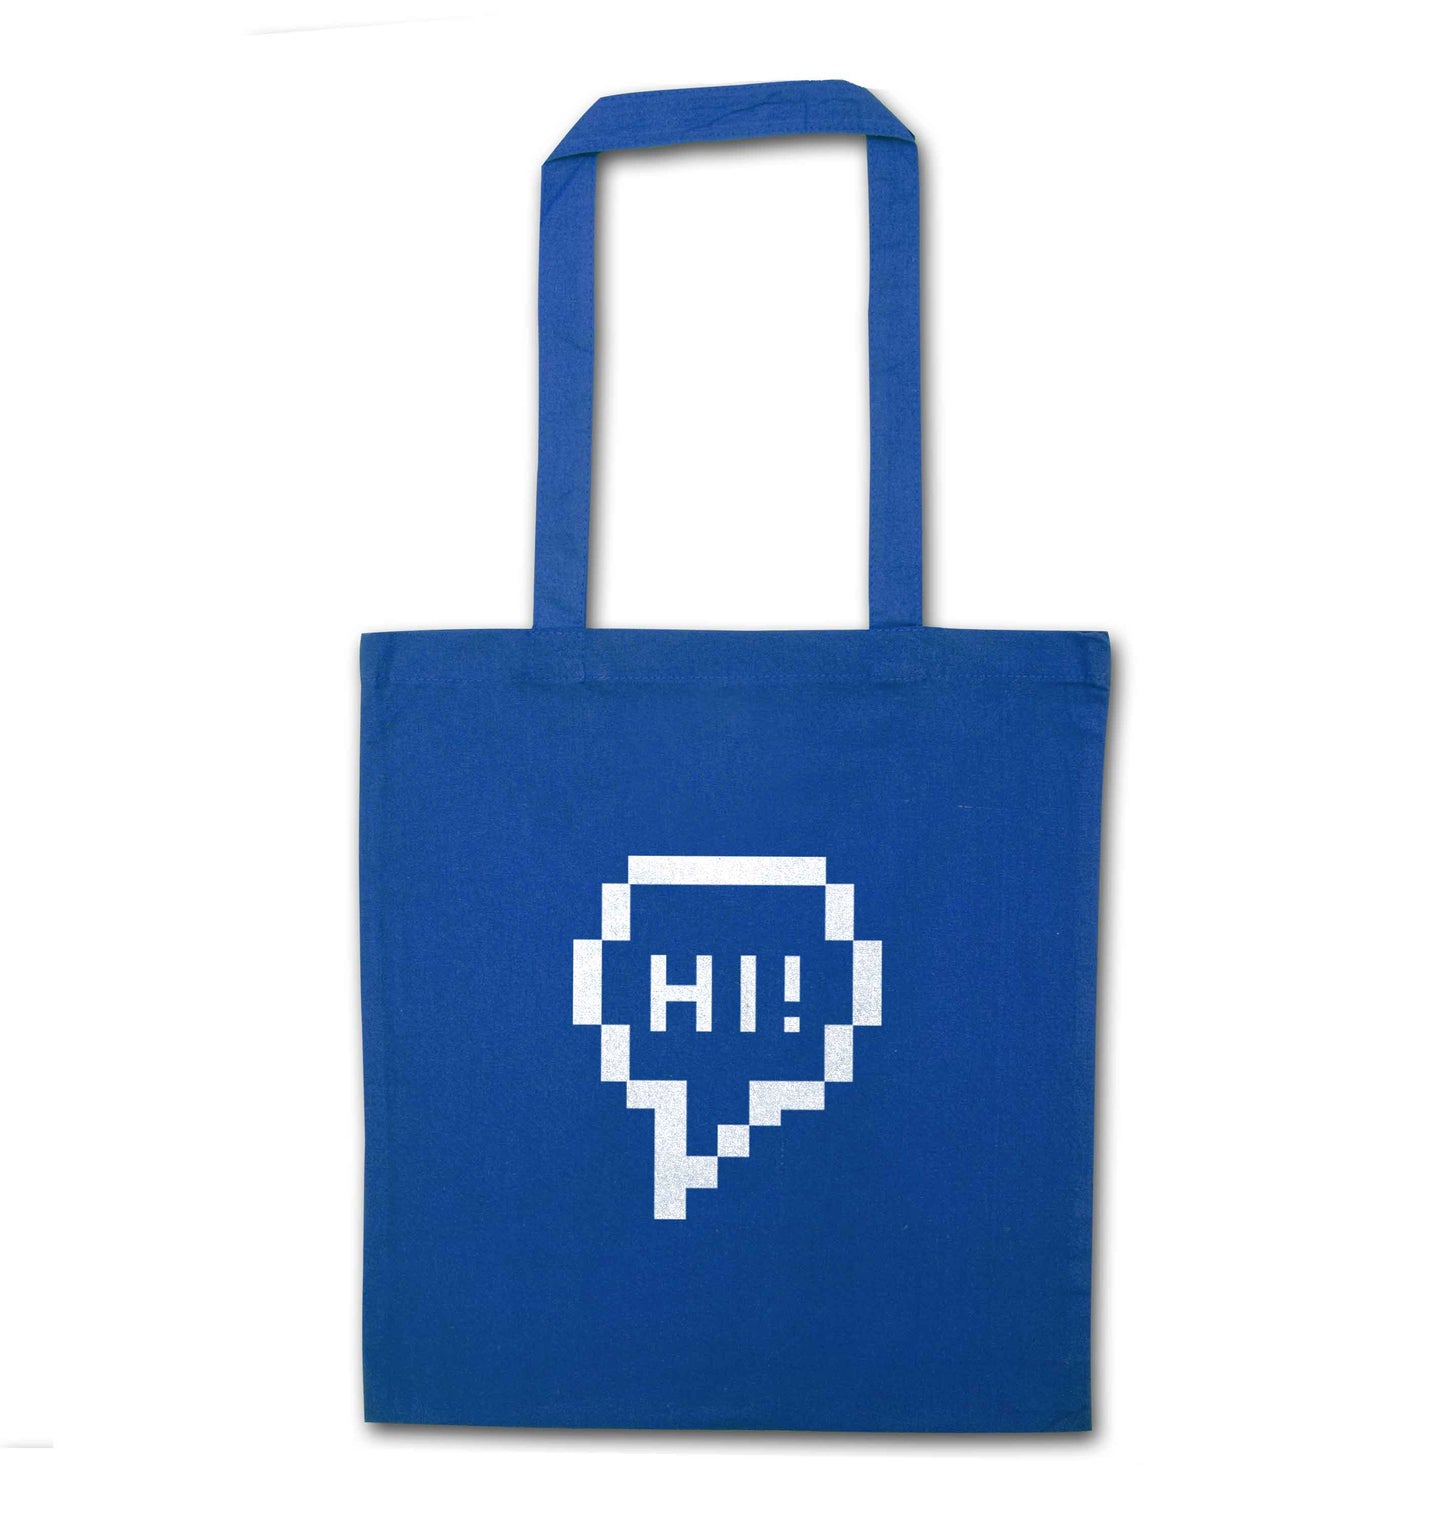 Hi blue tote bag